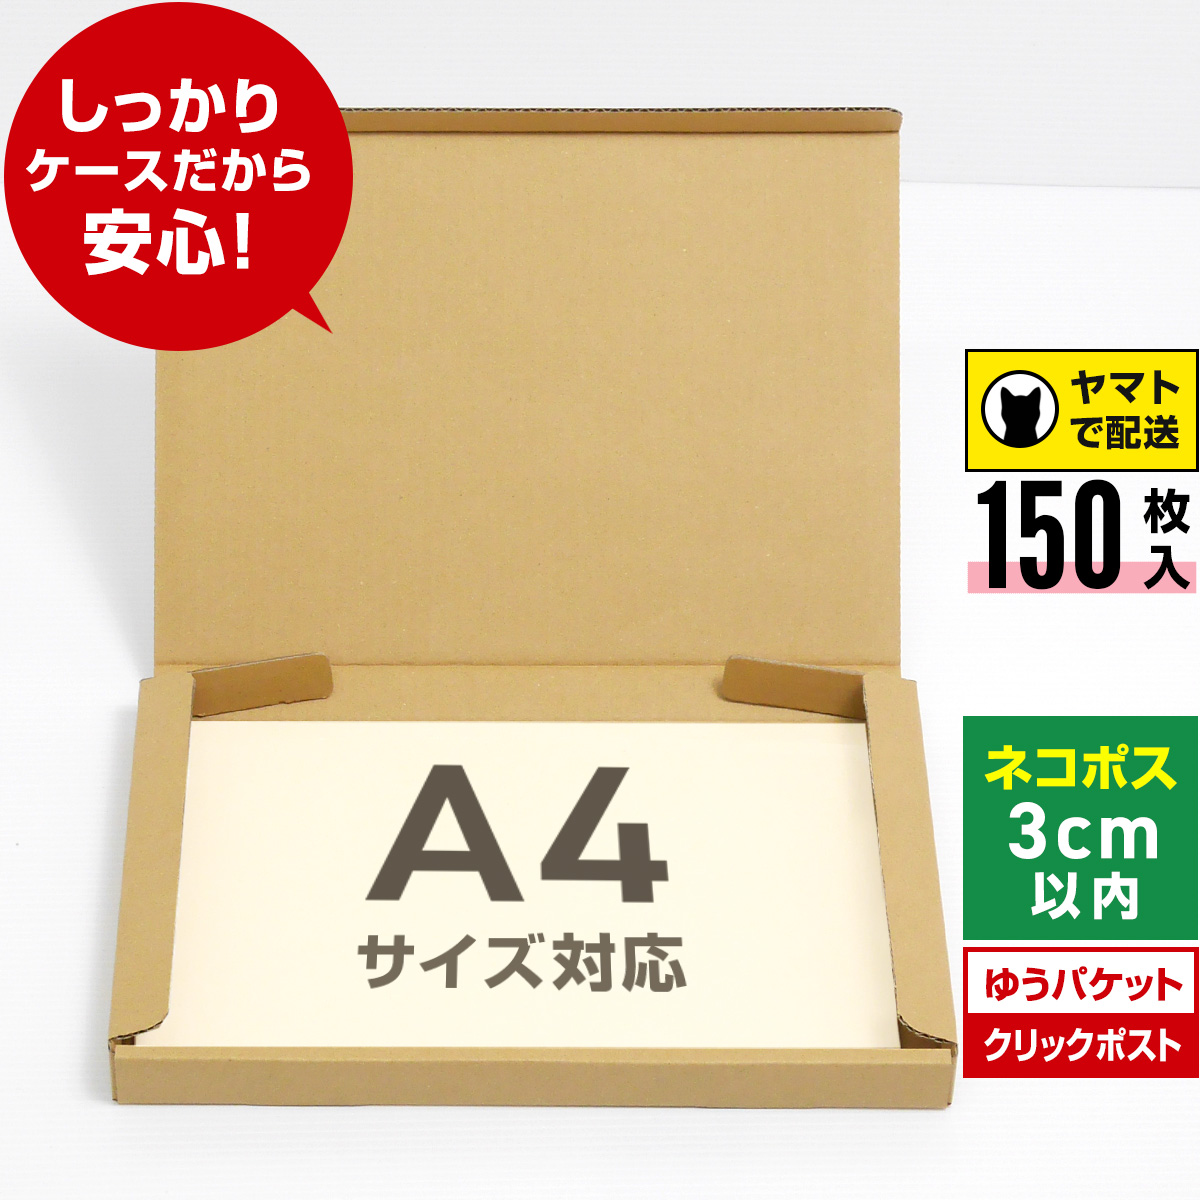 【楽天市場】ネコポス 箱 A4 200枚 (厚さ3cm 対応 308x223x27 